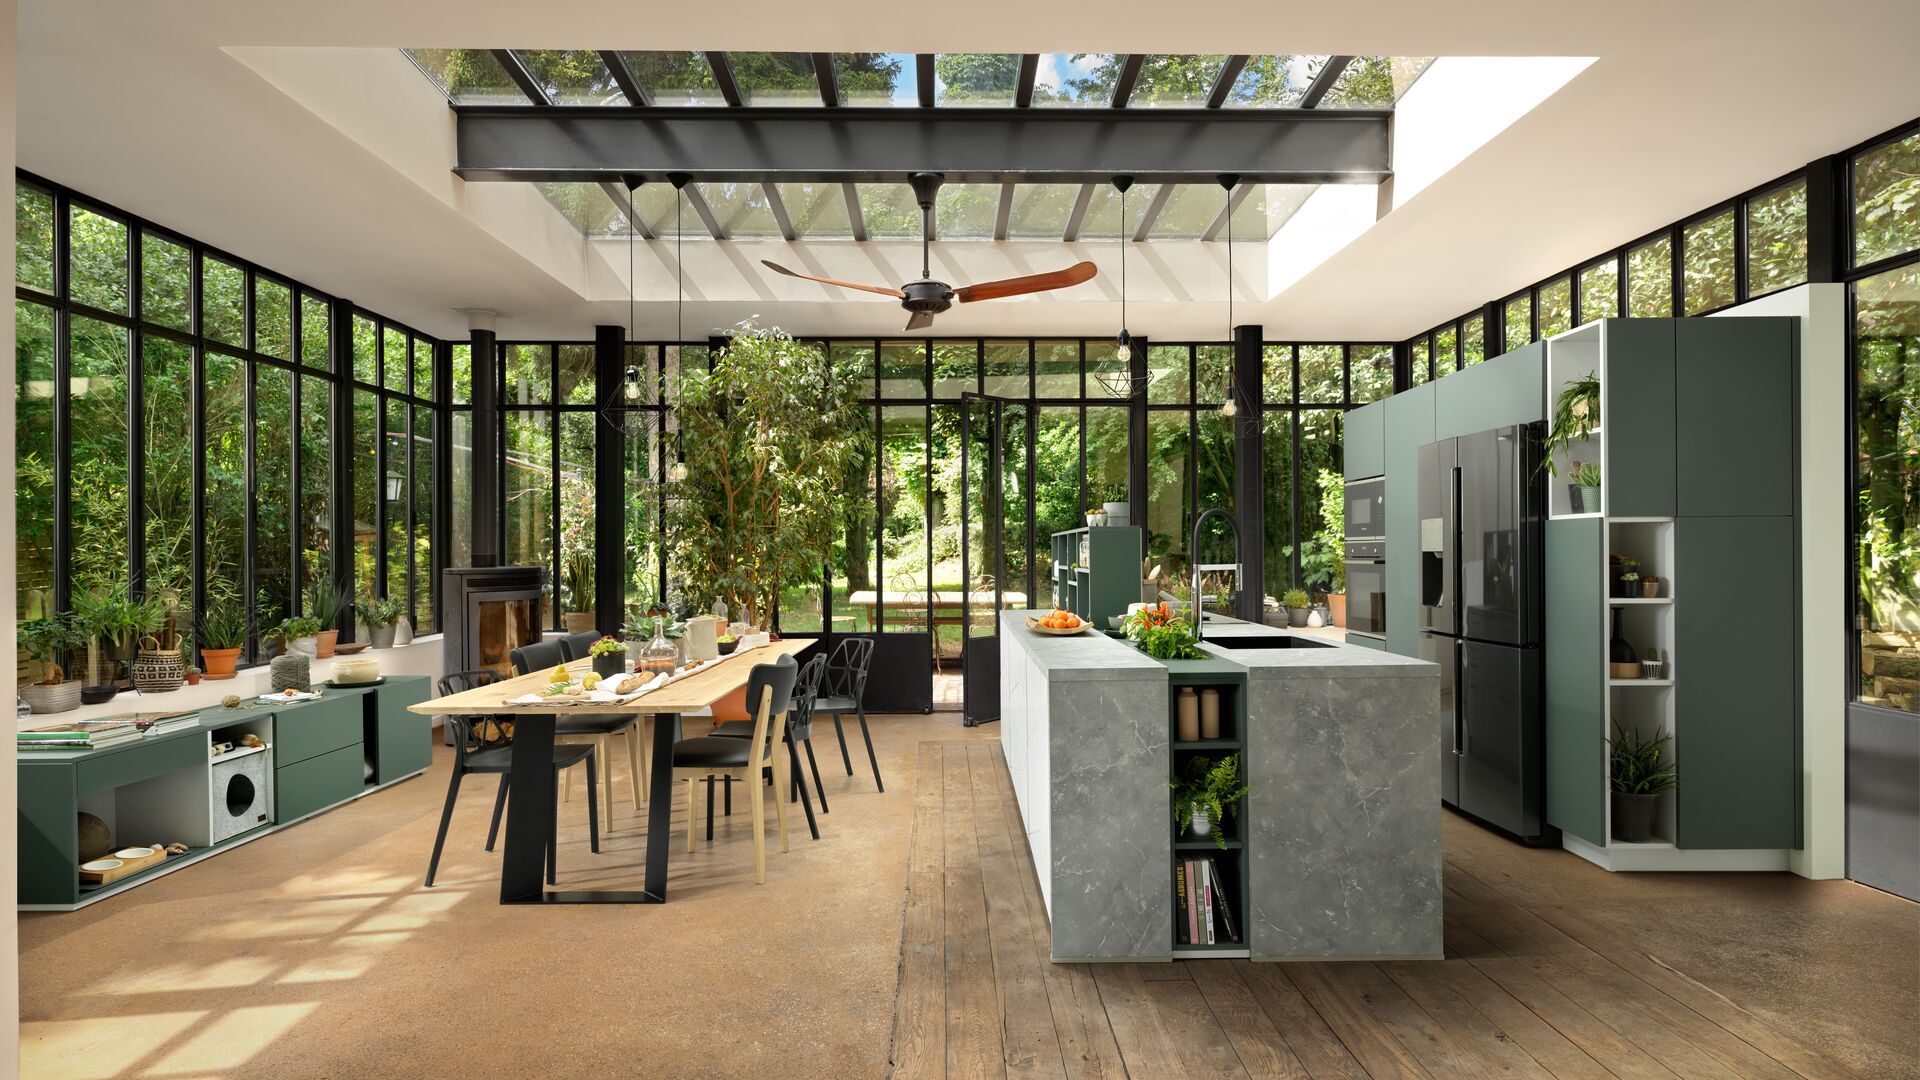 Grijsgroene keuken met eiland en glazen dak met zicht op de tuin in natuurlijke plantensfeer